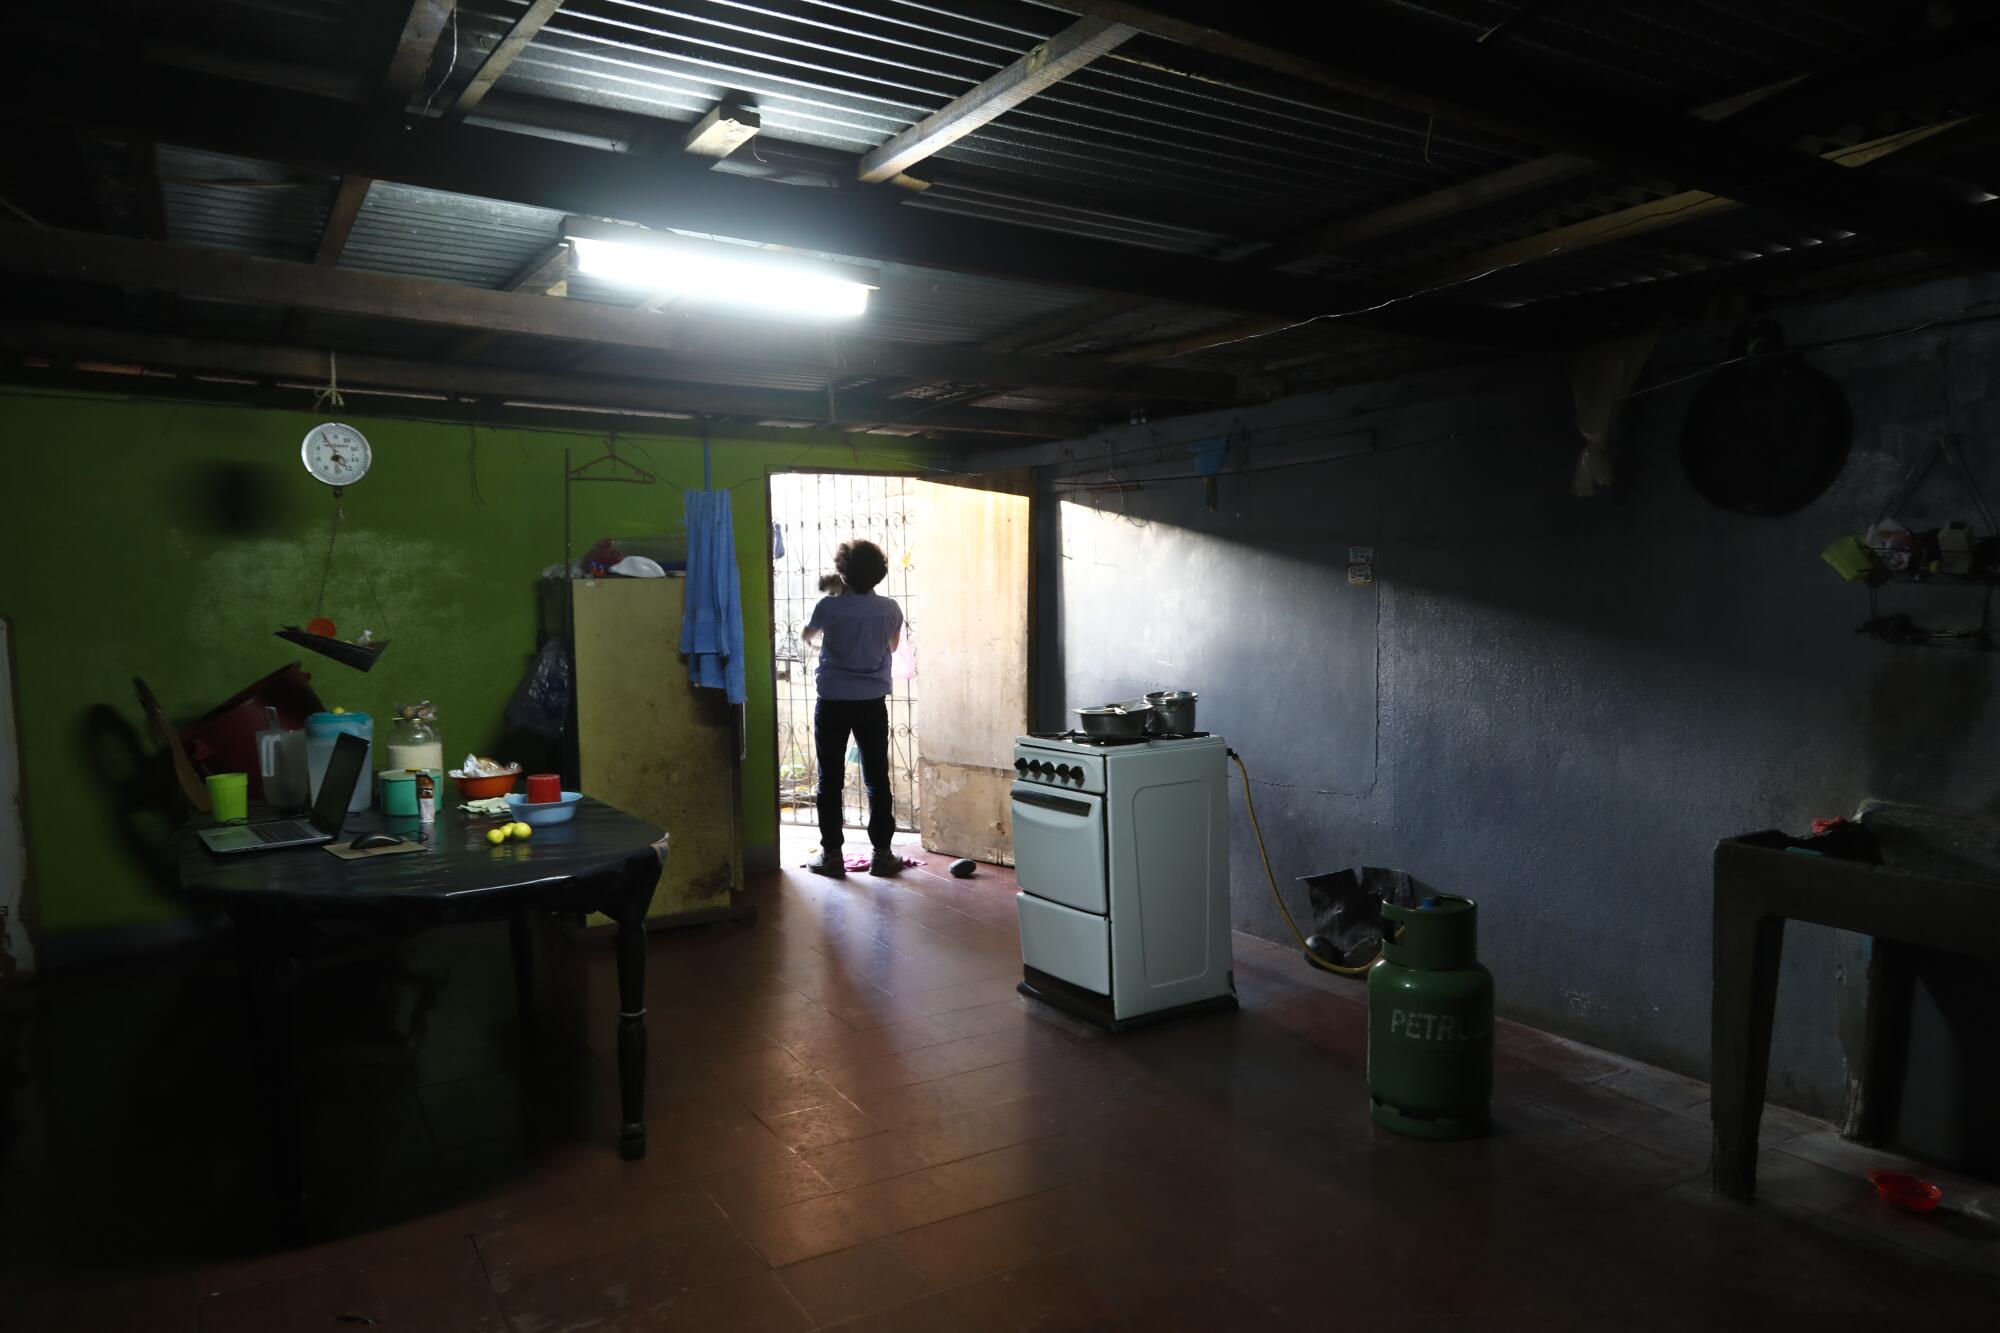 Un residente que vive cerca de una universidad en Managua recuerda cómo el gobierno desplegó gas lacrimógeno contra los manifestantes, y cómo una lata llenó su cocina con el gas, obligando a él y a su familia a refugiarse en un dormitorio con una toalla mojada metida debajo de la puerta.